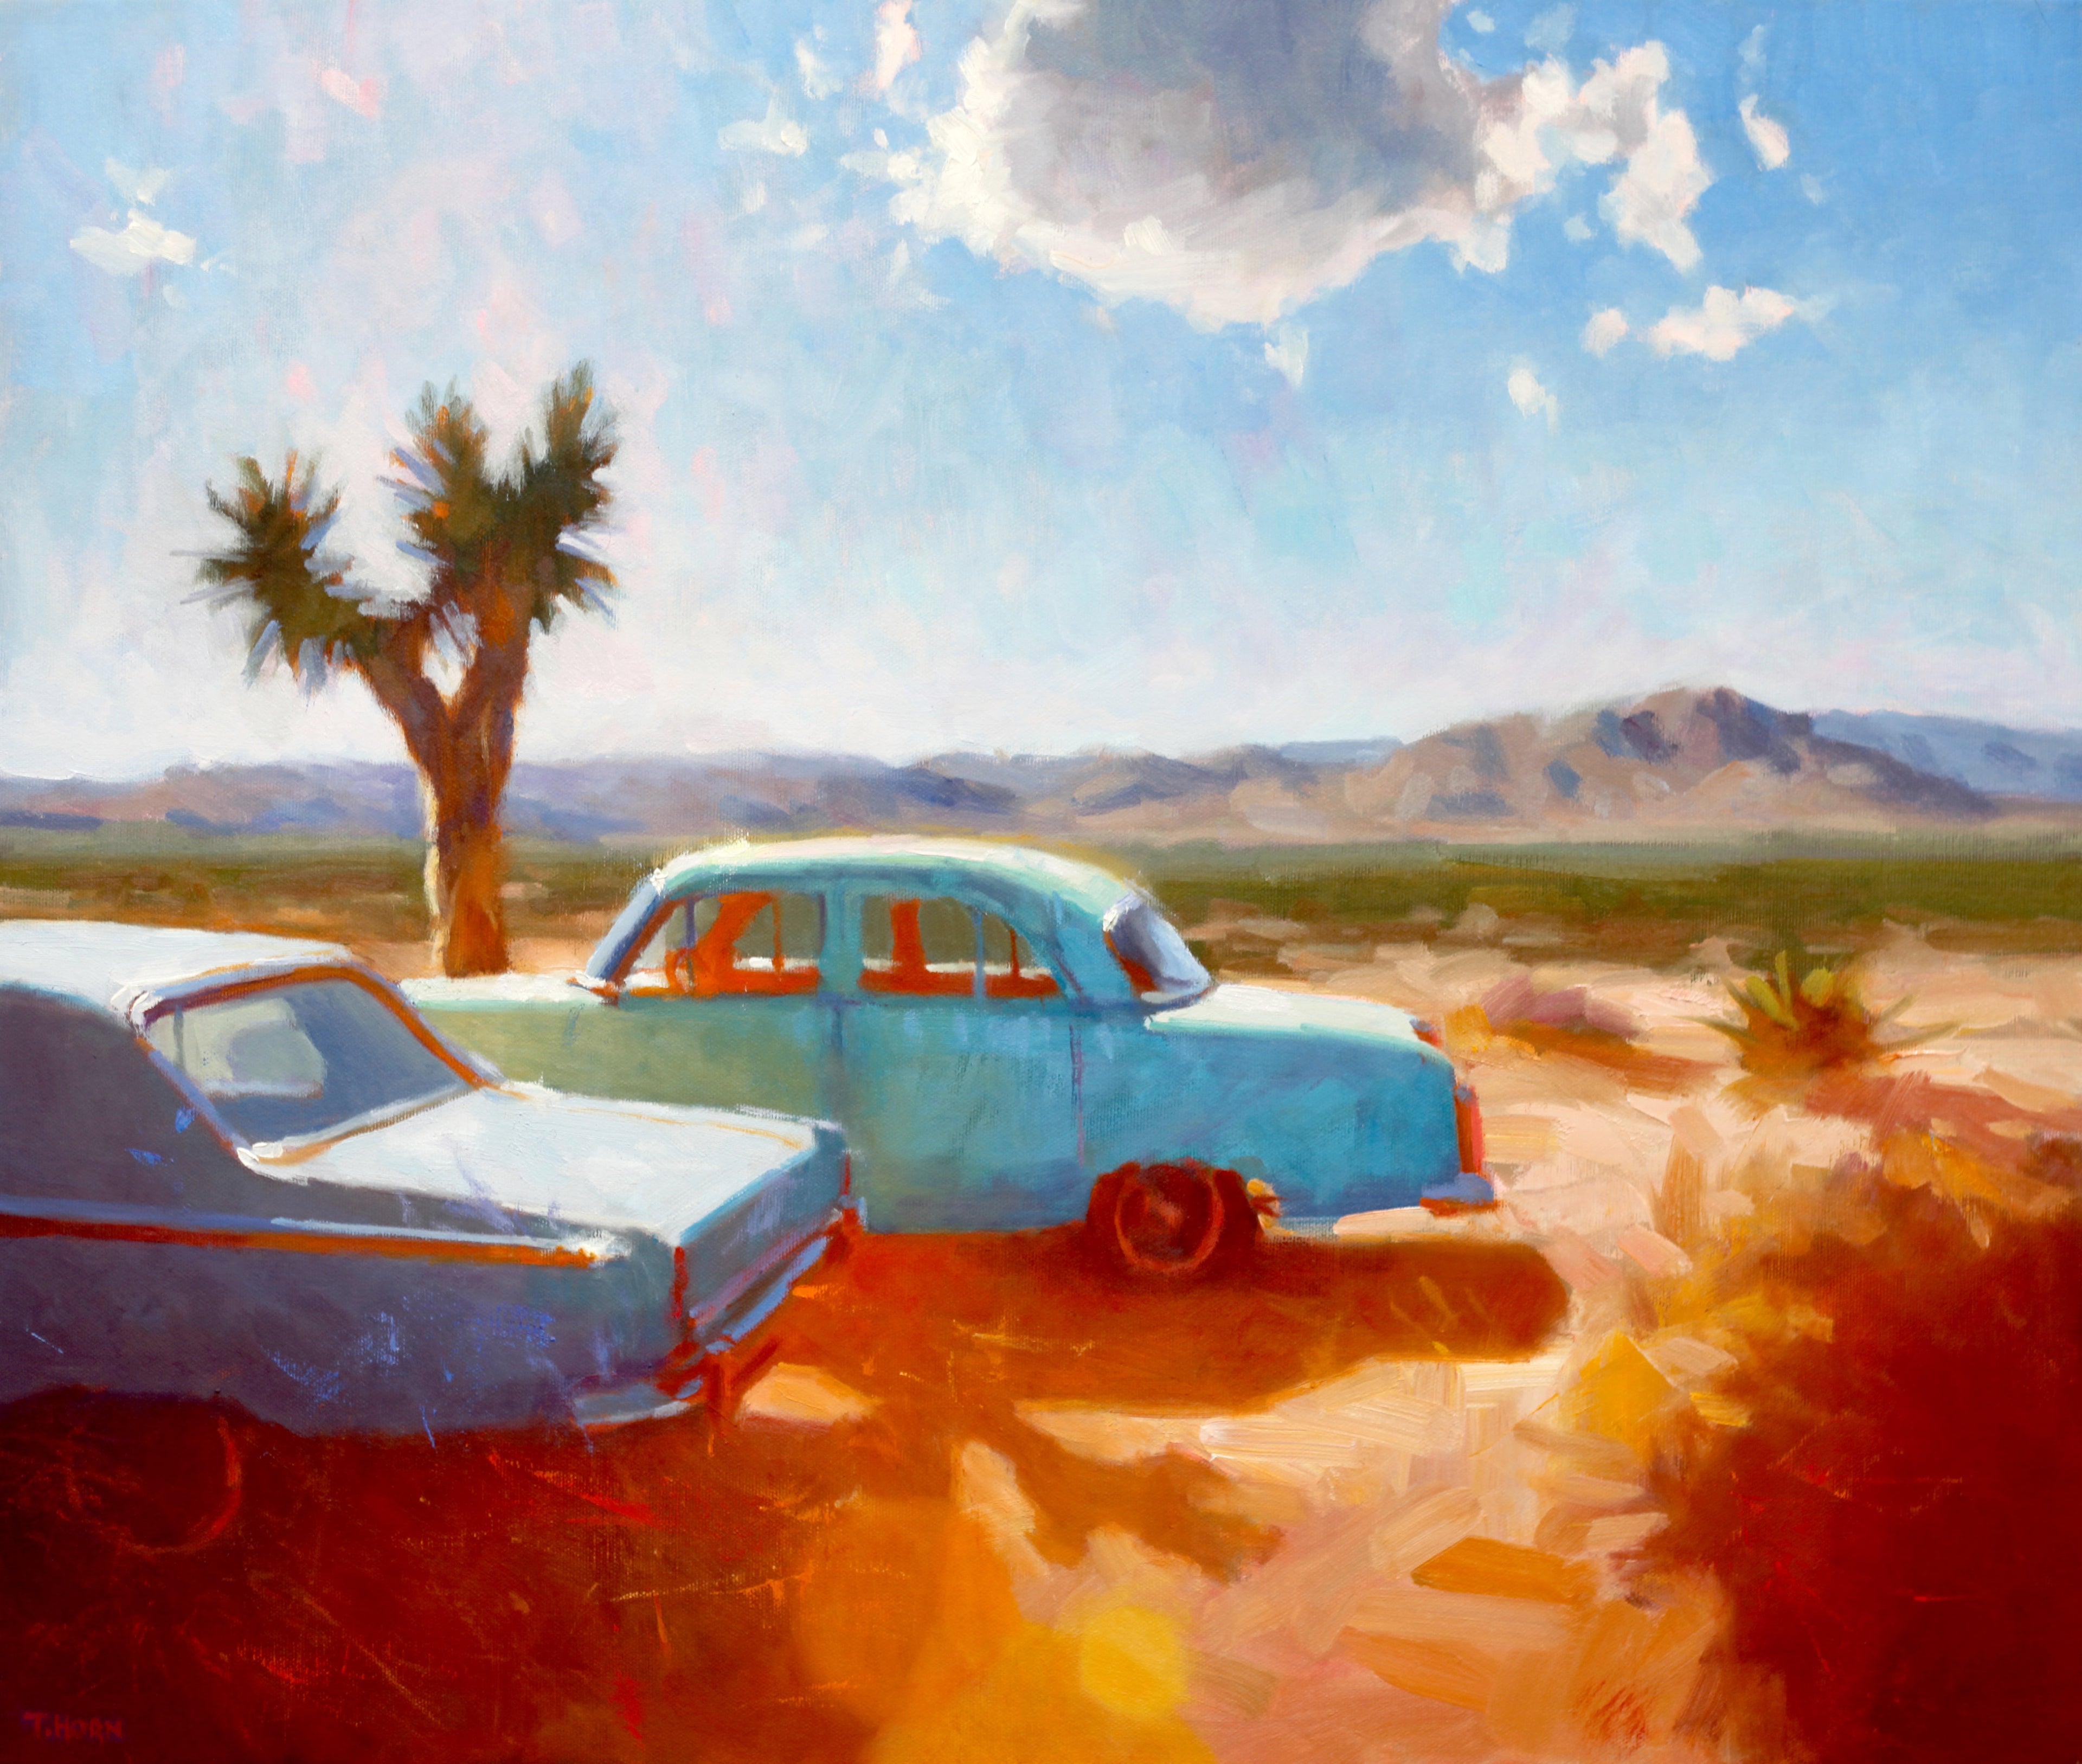 Desert Cars